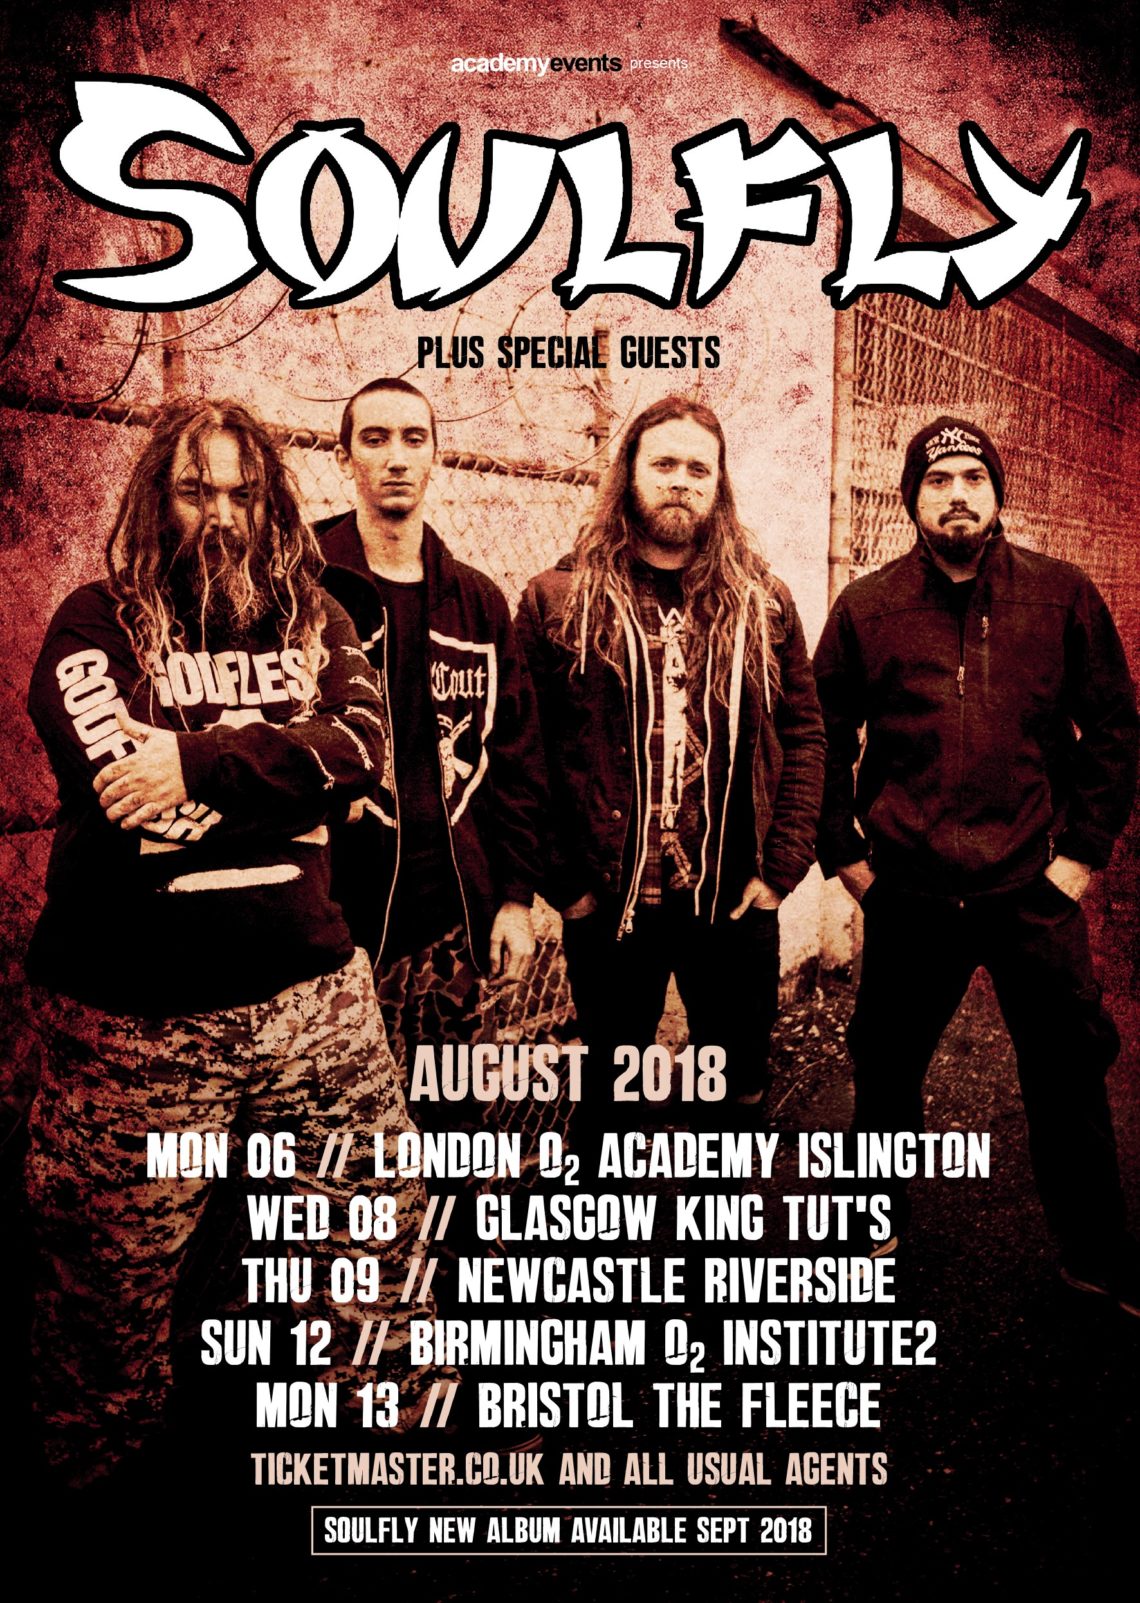 soulfly tour 2023 uk